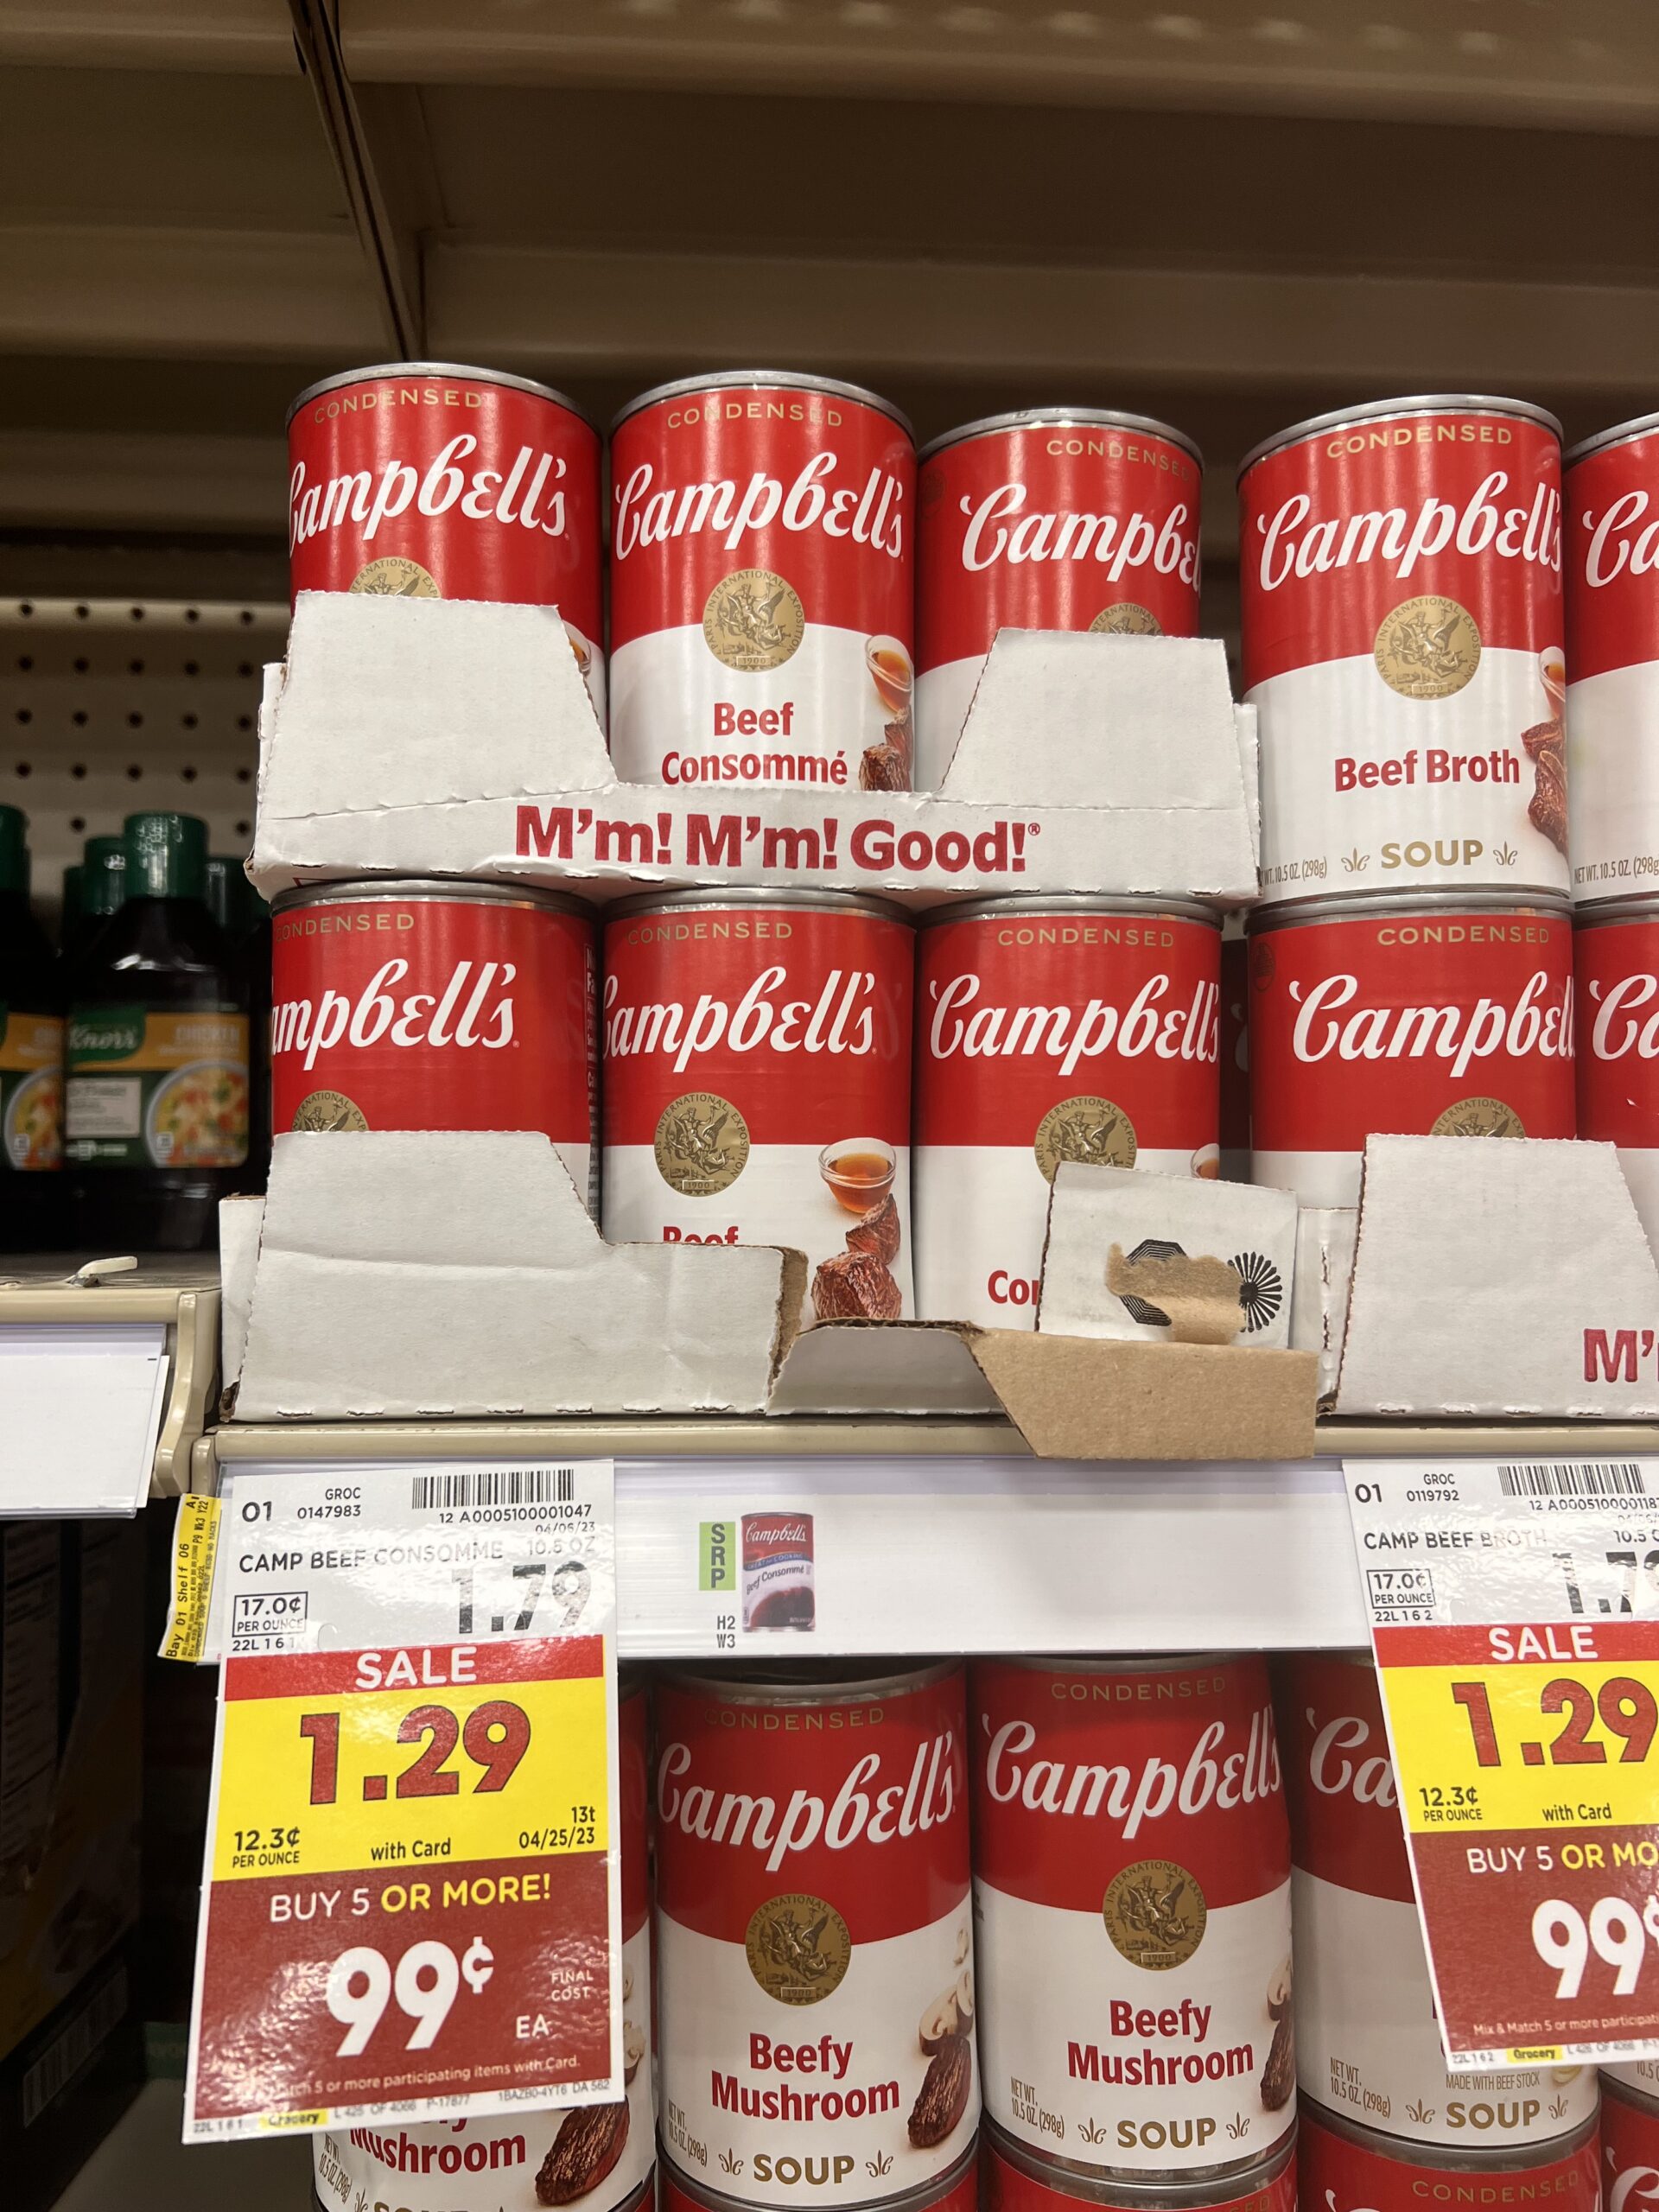 campbell's soup kroger shelf image 39